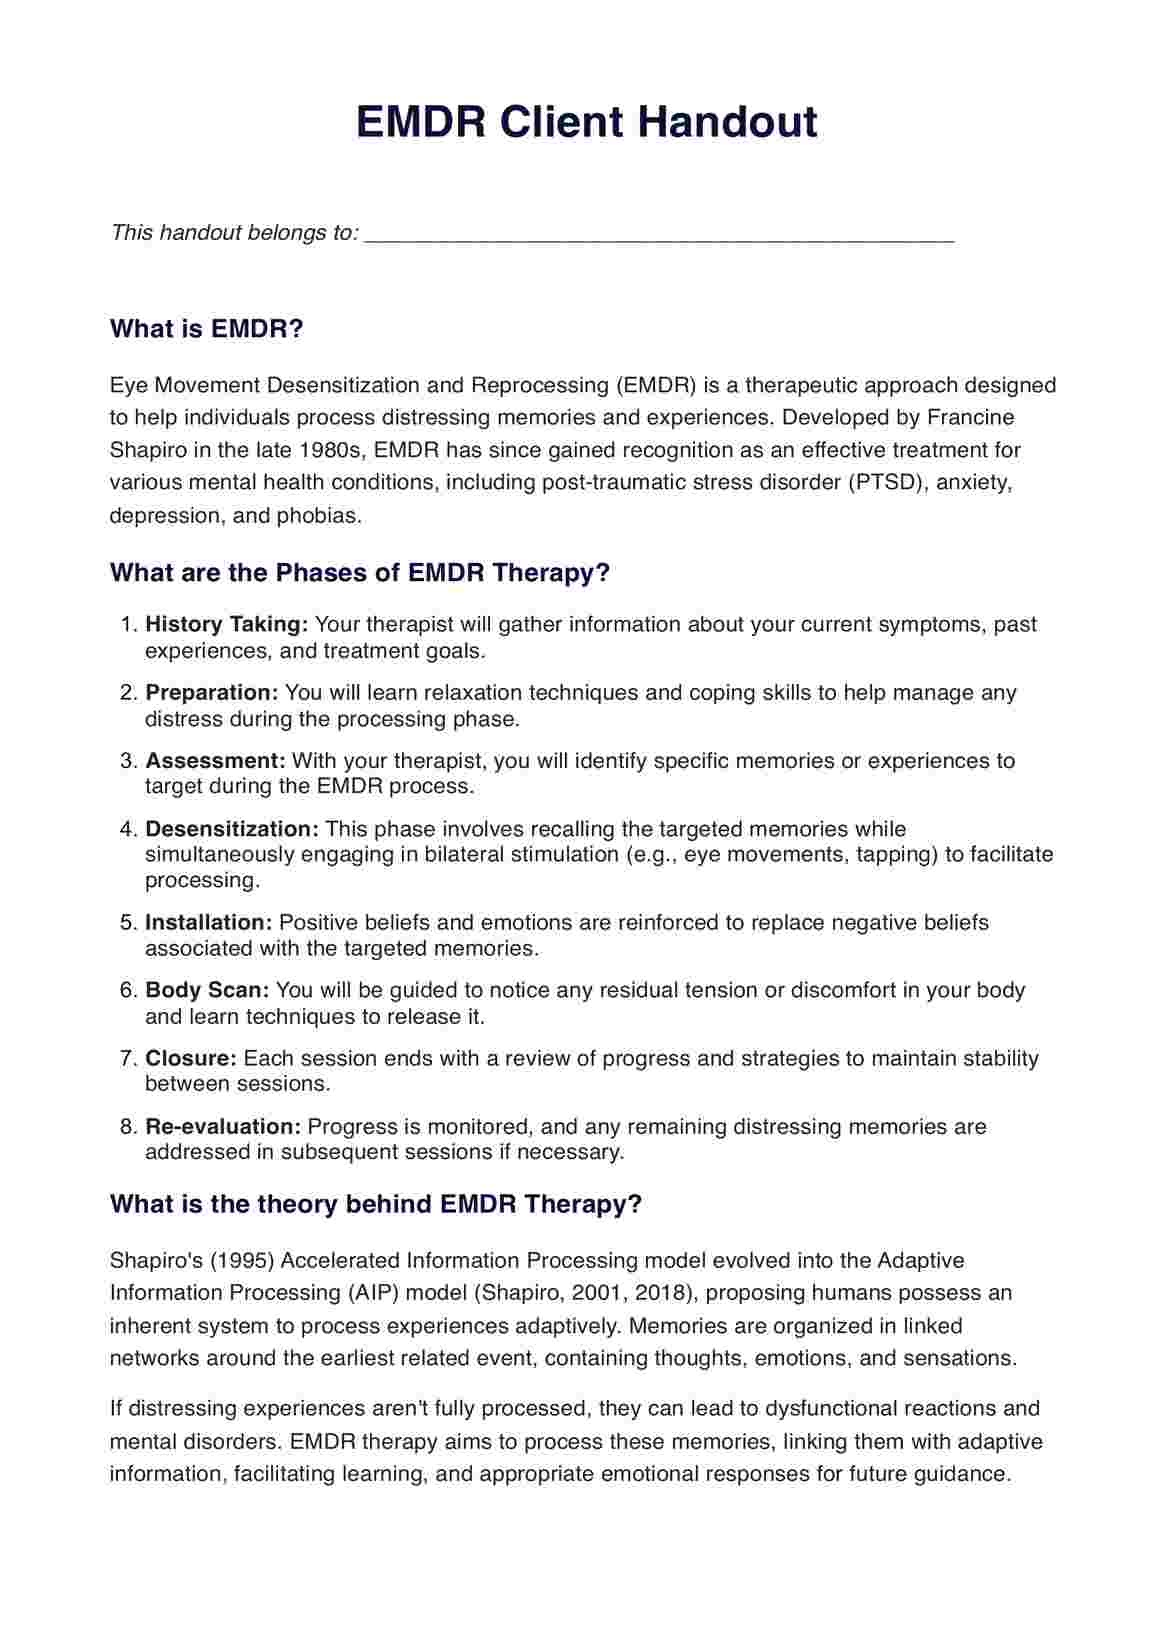 EMDR Client Handout PDF Example